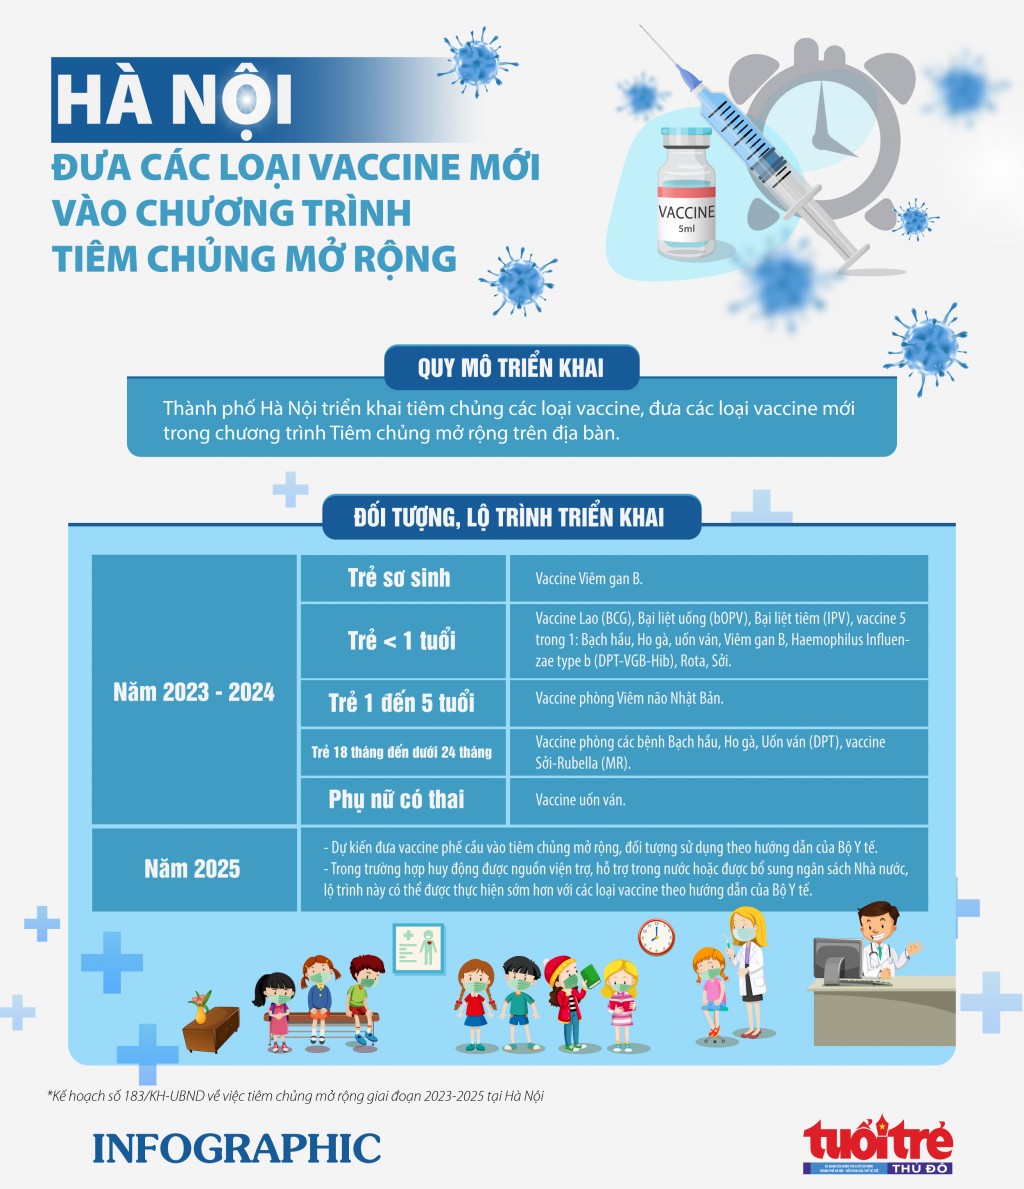 Hà Nội đưa các loại vaccine mới vào chương trình tiêm chủng mở rộng